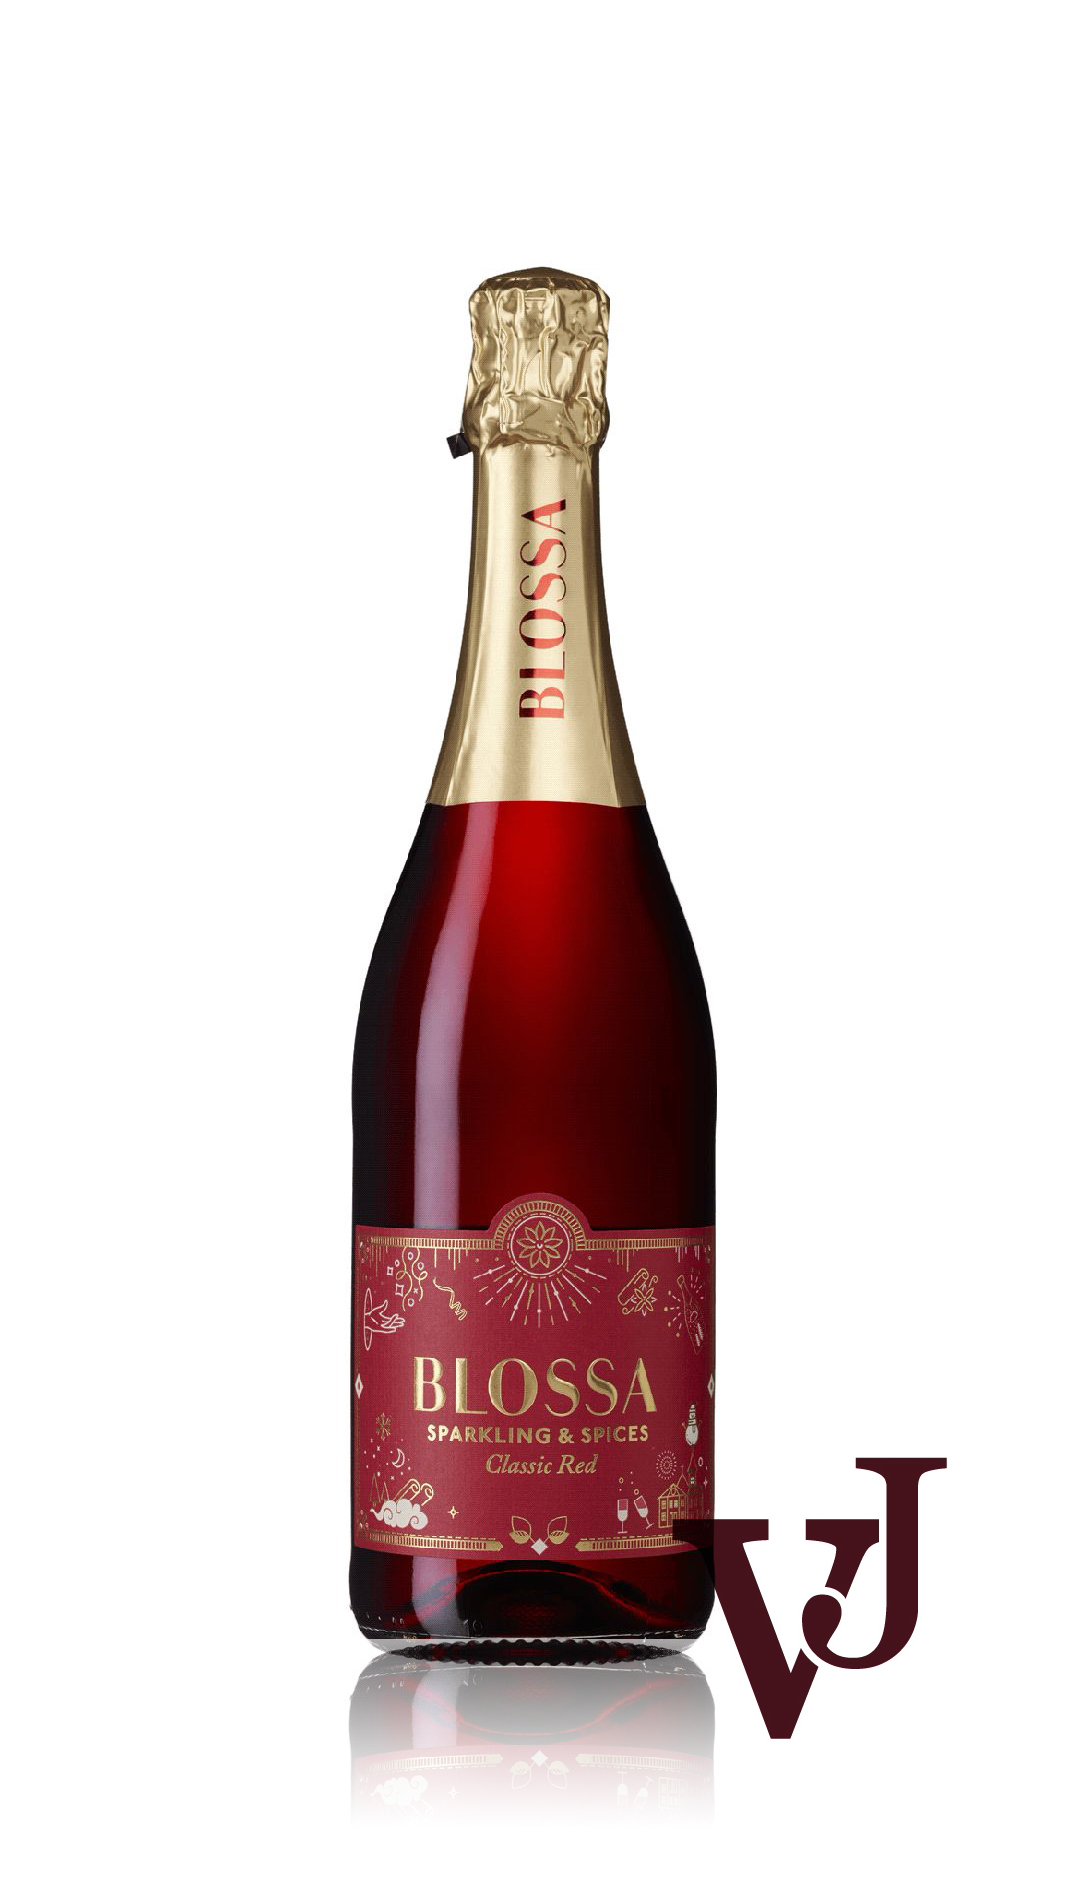 Övrigt vin - Blossa Sparkling & Spices Classic Red artikel nummer 7898501 från producenten Schloss Wachenheim från området Tyskland